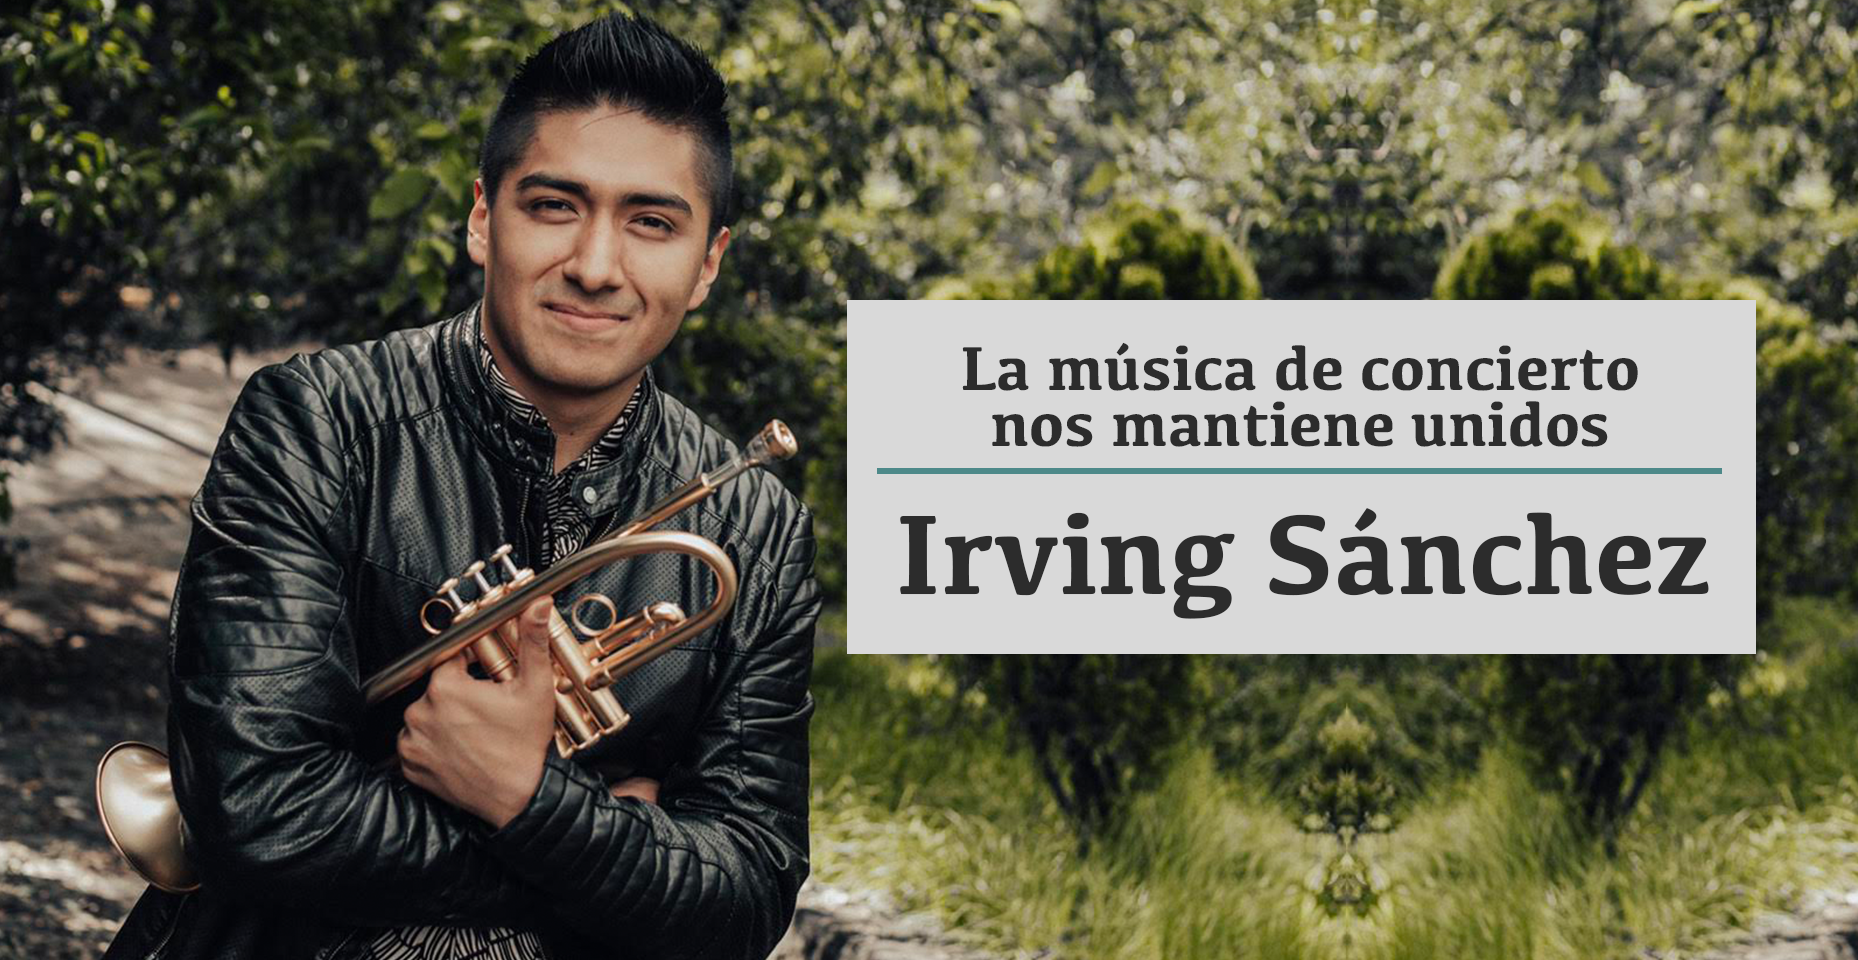 Irving Sánchez